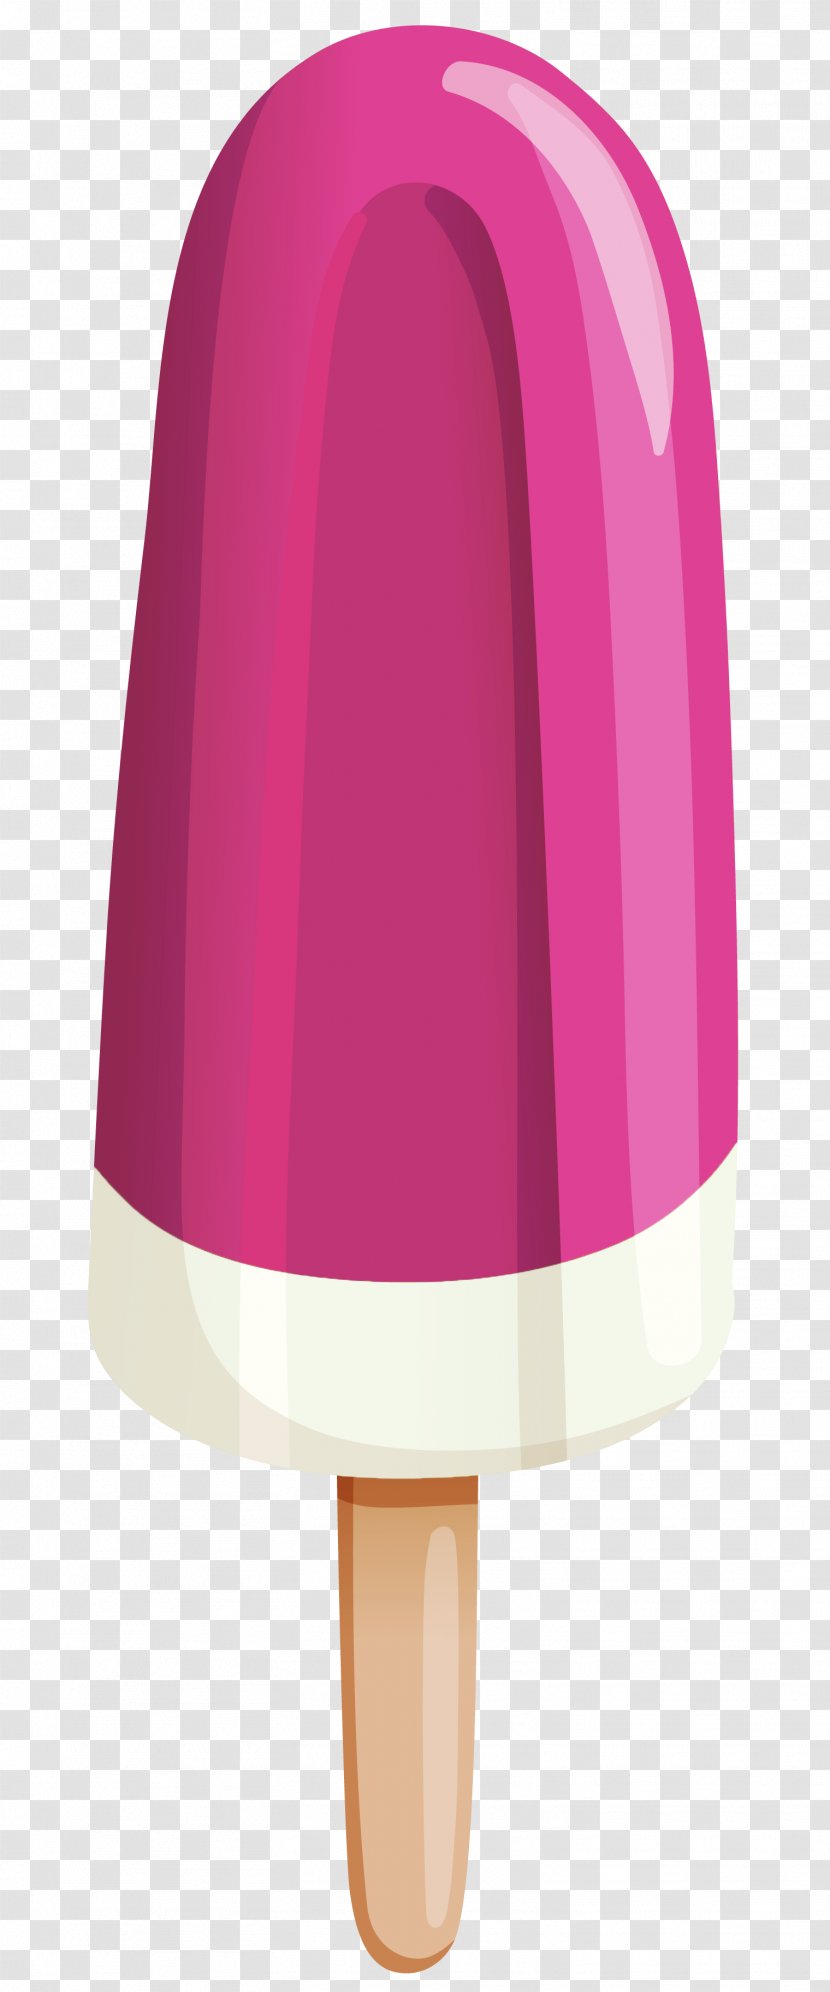 Ice Cream Cones Coffee Sundae - Lollipop Transparent PNG